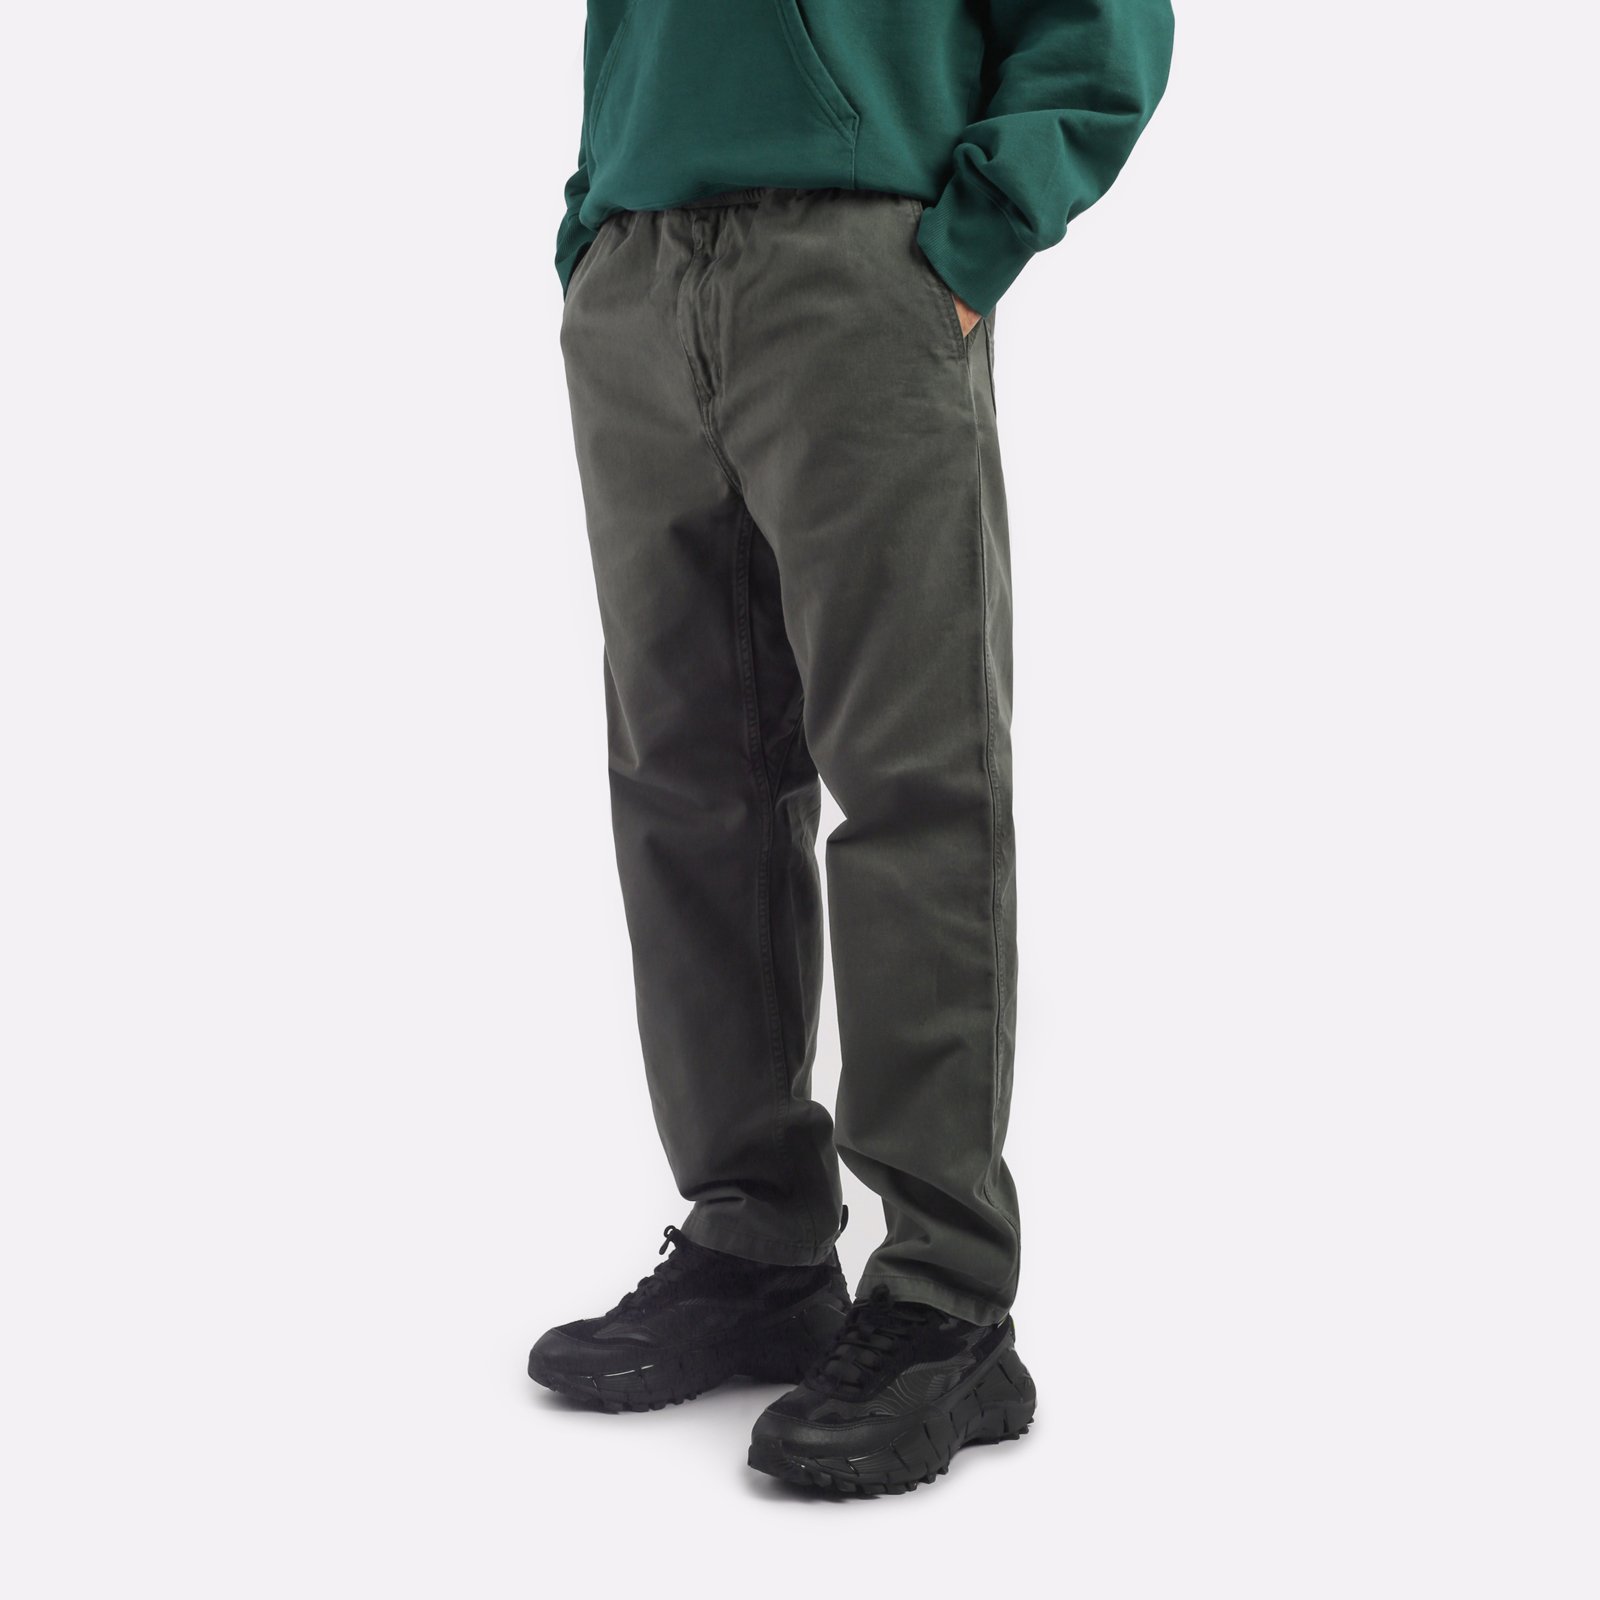 мужские зеленые брюки Carhartt WIP Flint Pant I029919-jura - цена, описание, фото 3